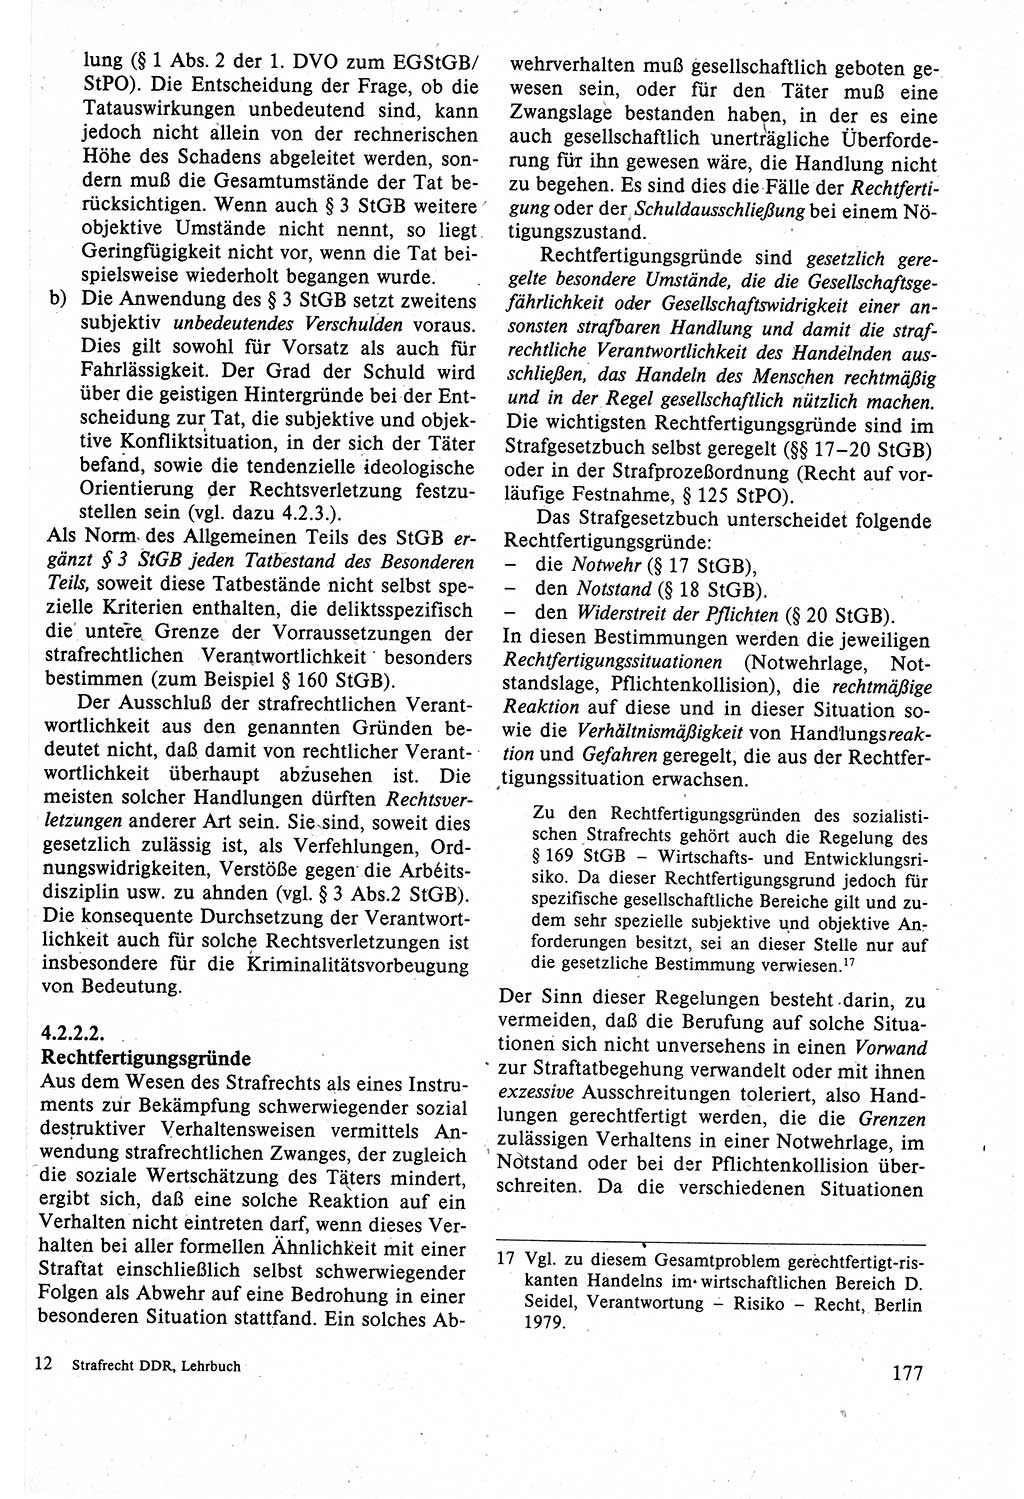 Strafrecht der DDR (Deutsche Demokratische Republik), Lehrbuch 1988, Seite 177 (Strafr. DDR Lb. 1988, S. 177)